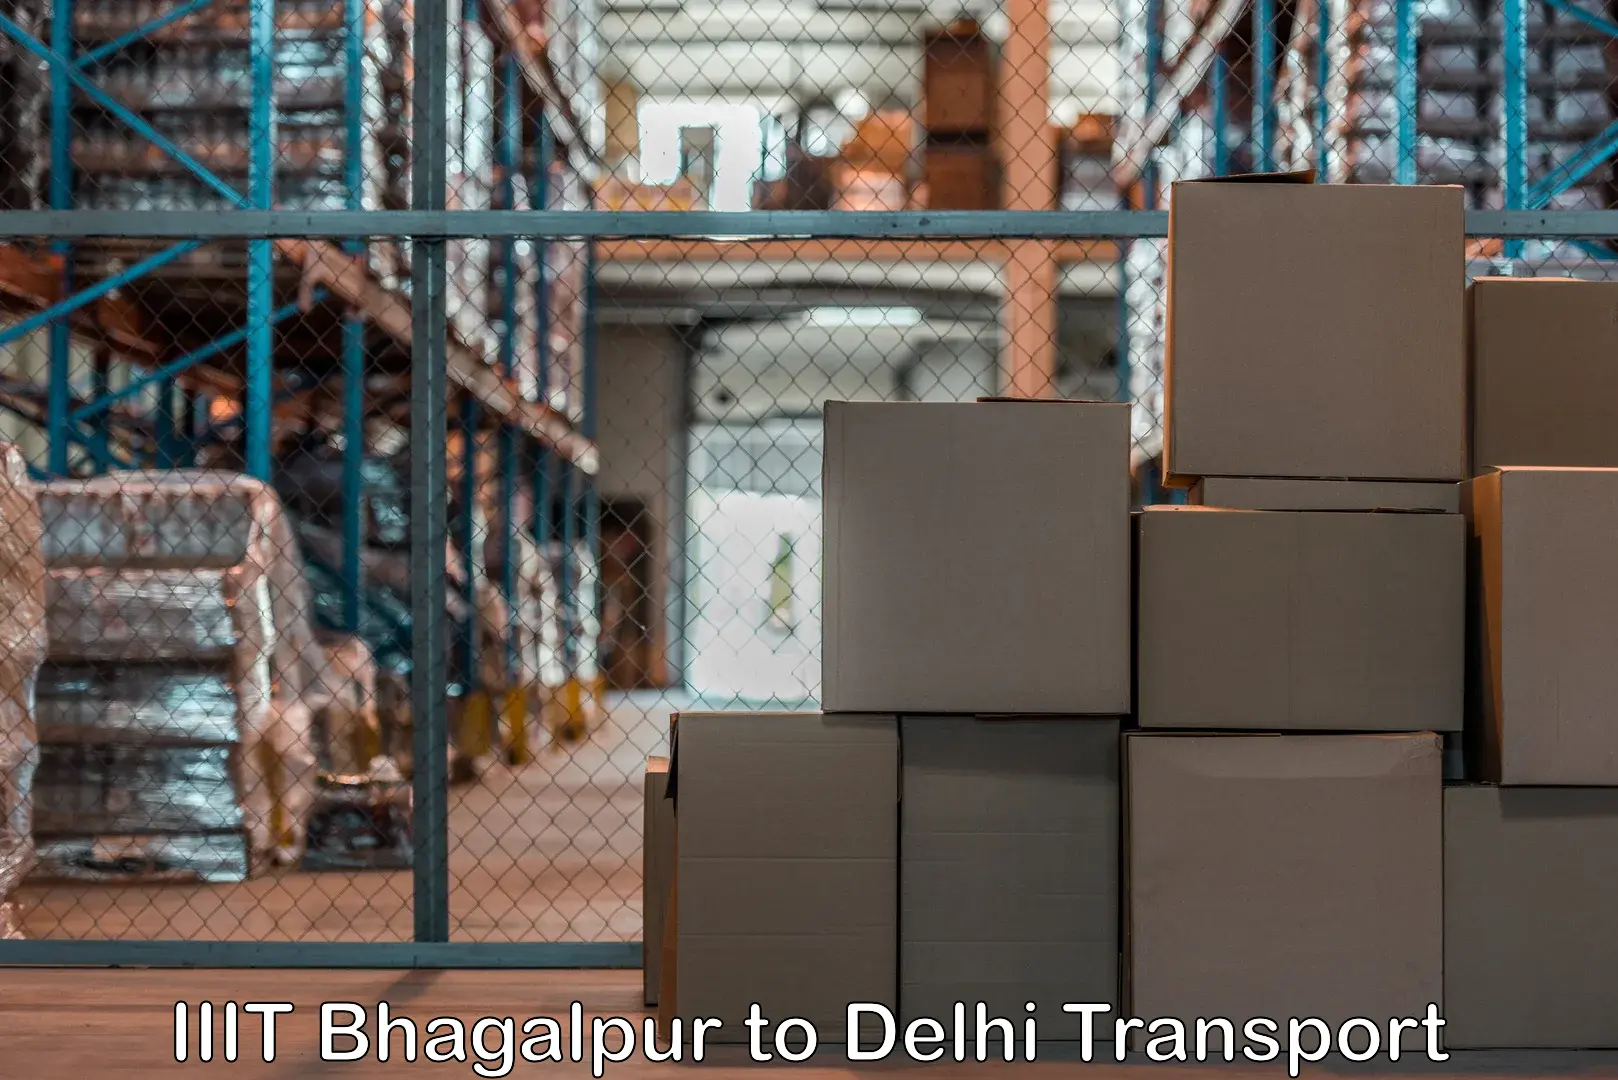 Online transport IIIT Bhagalpur to NIT Delhi